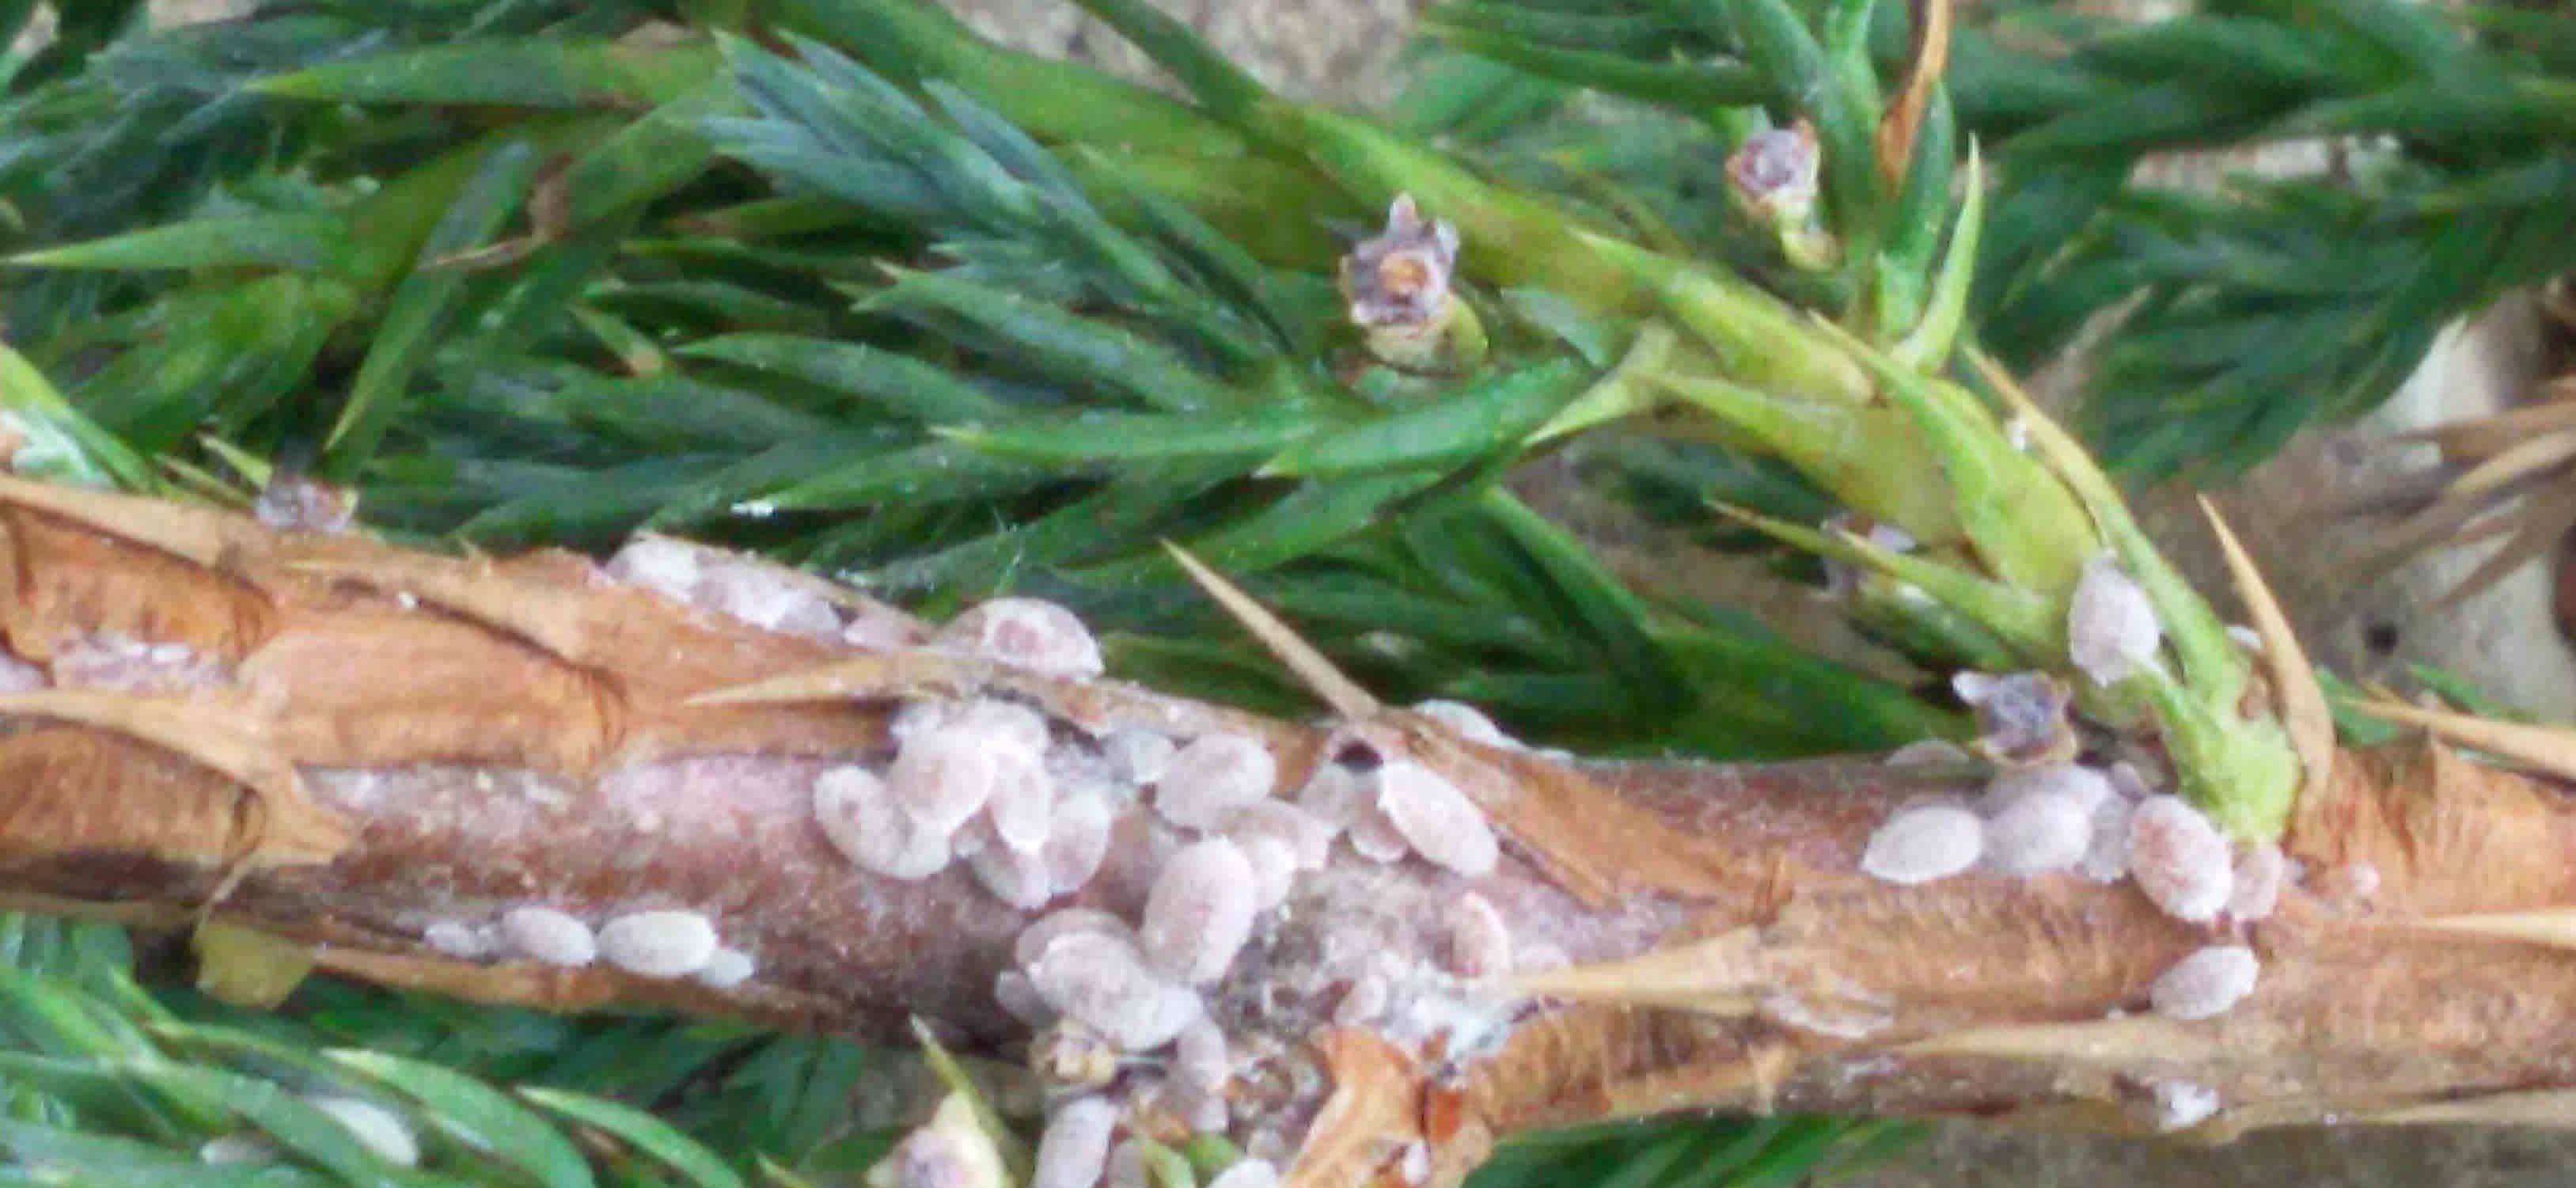 Вредители растений щитовки и червецы: фото и видео, как избавиться от щитовок и червецов